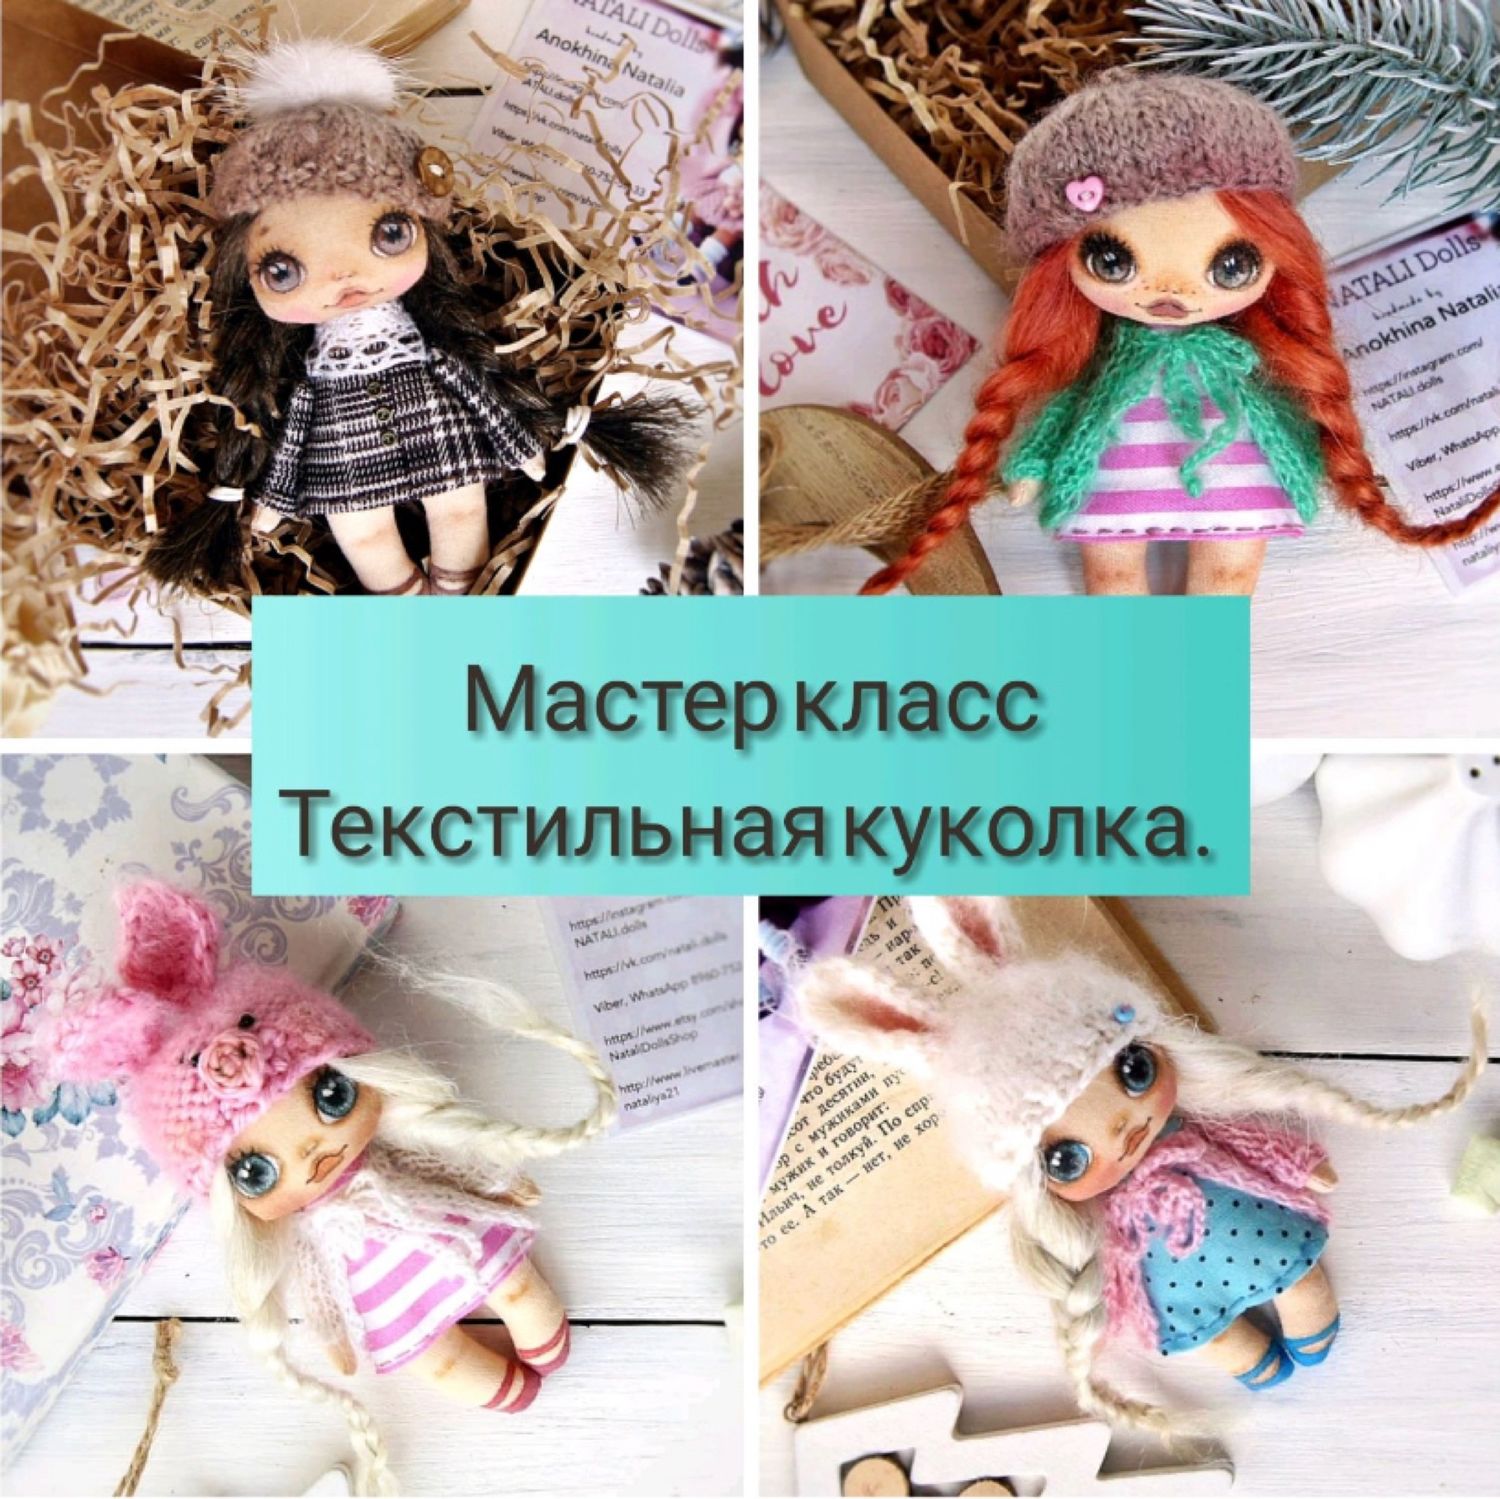 Мастер-класс — изготовление русской тряпичной куклы